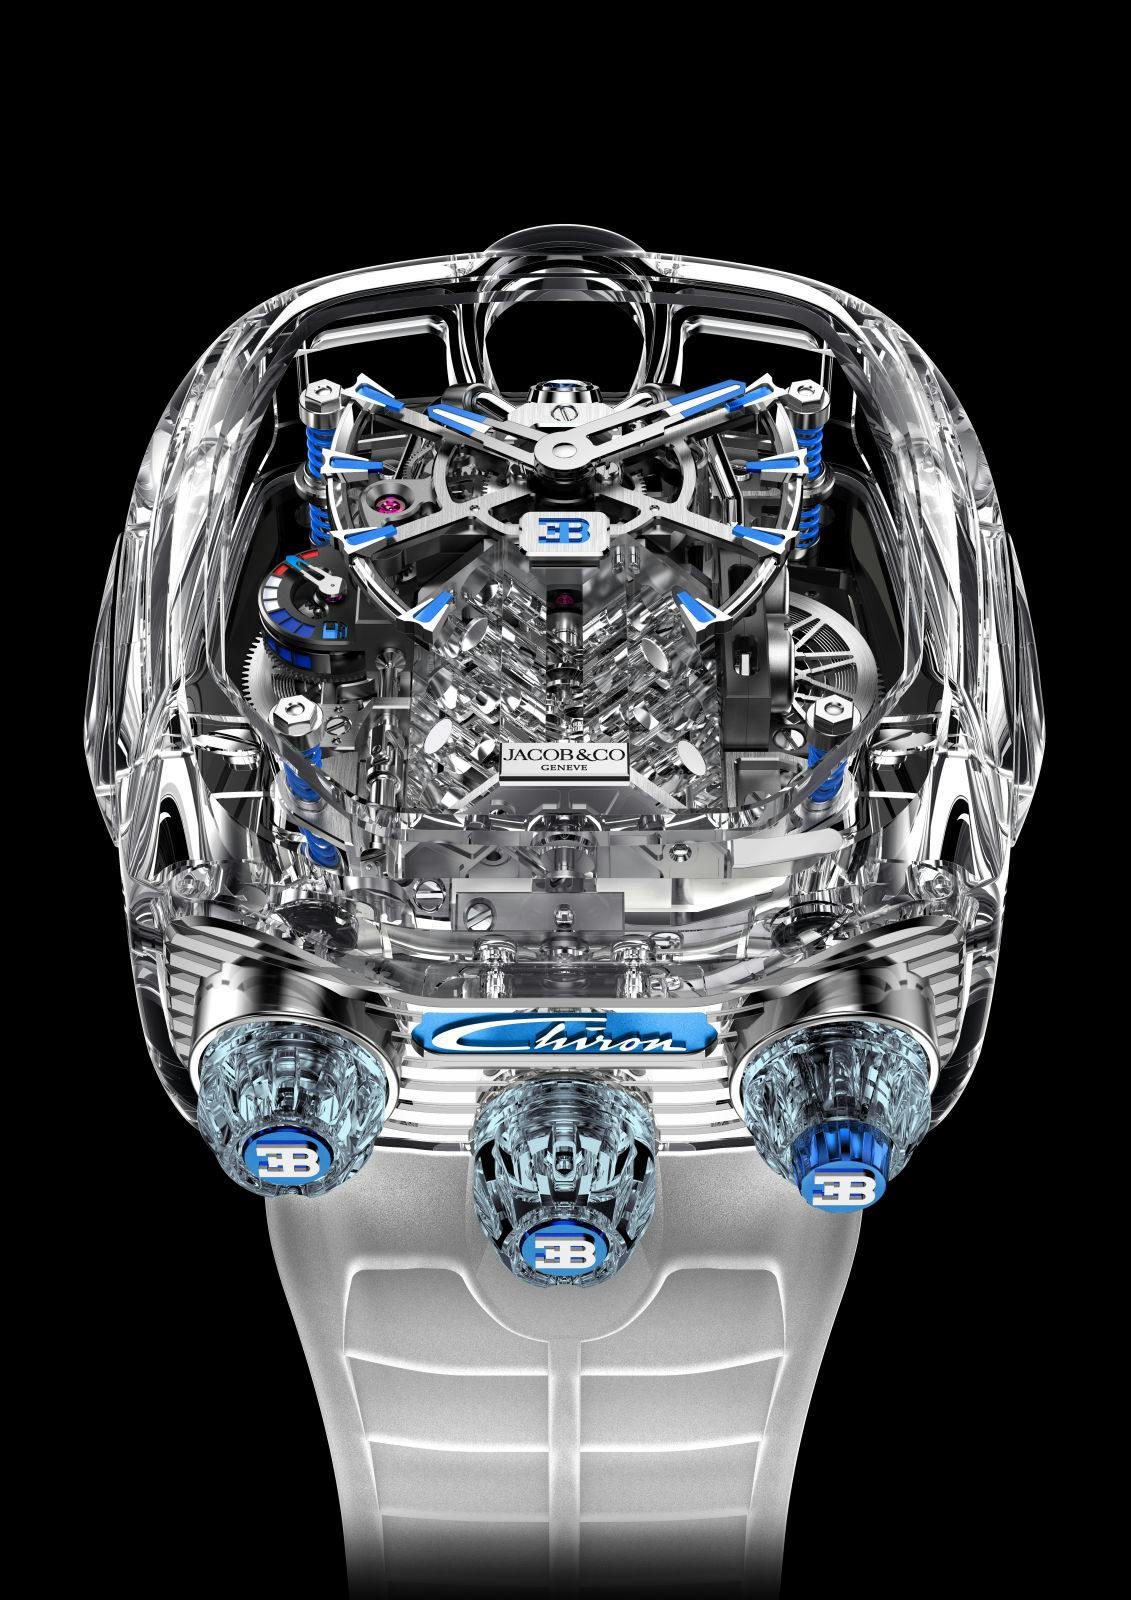 La Jacob & Co. x Bugatti Chiron Tourbillon Limited Edition “Sapphire Crystal”.